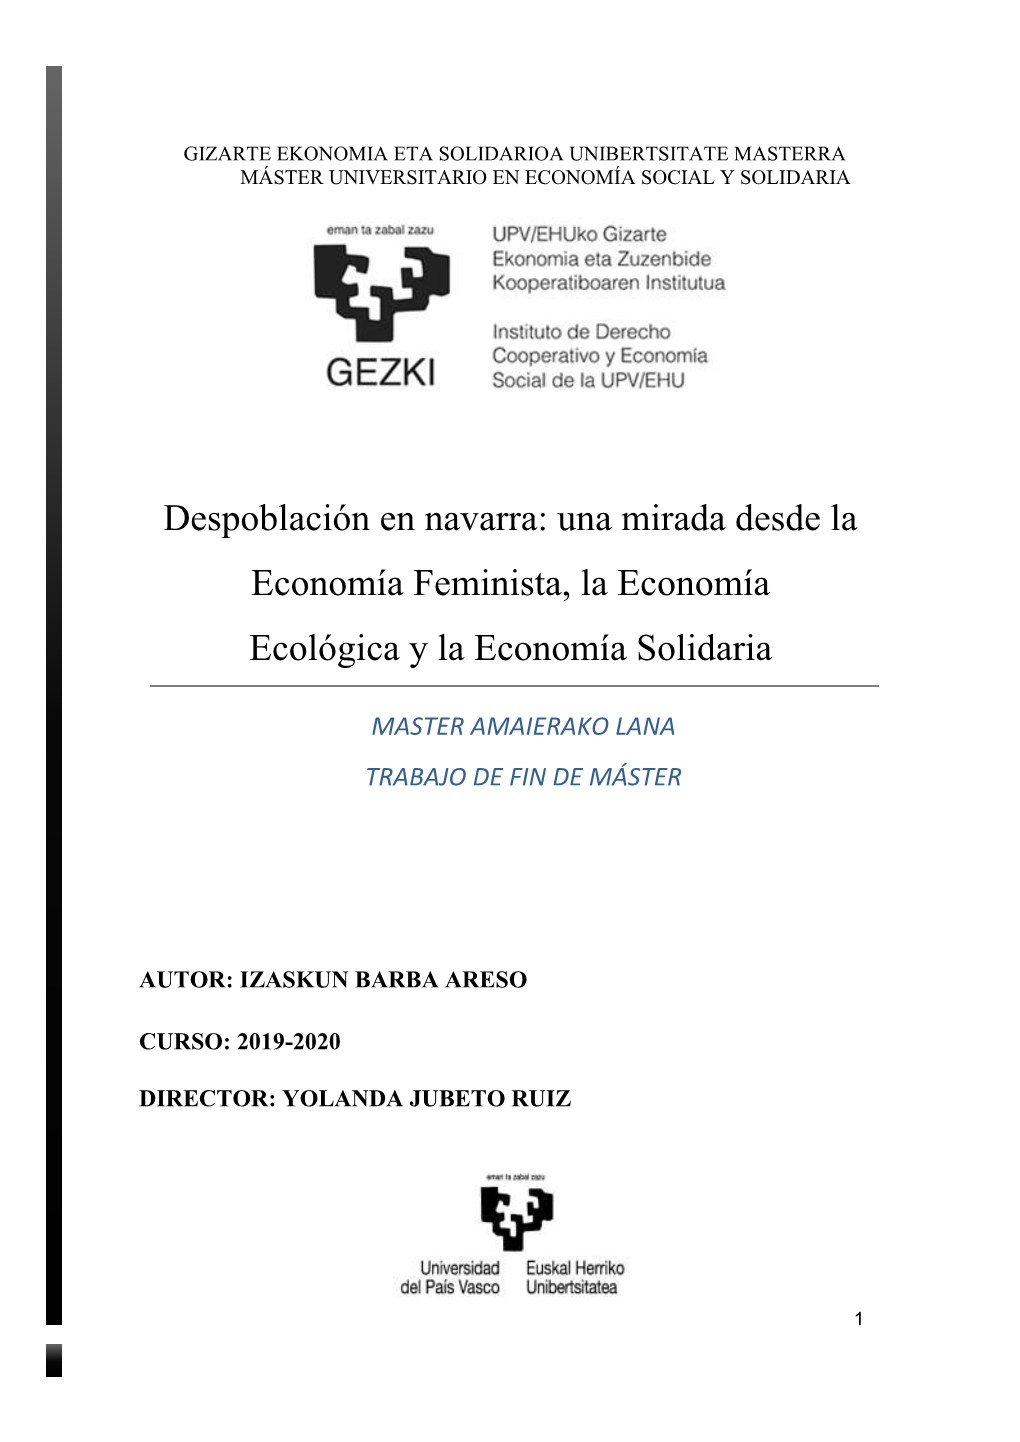 Despoblación En Navarra: Una Mirada Desde La Economía Feminista, La